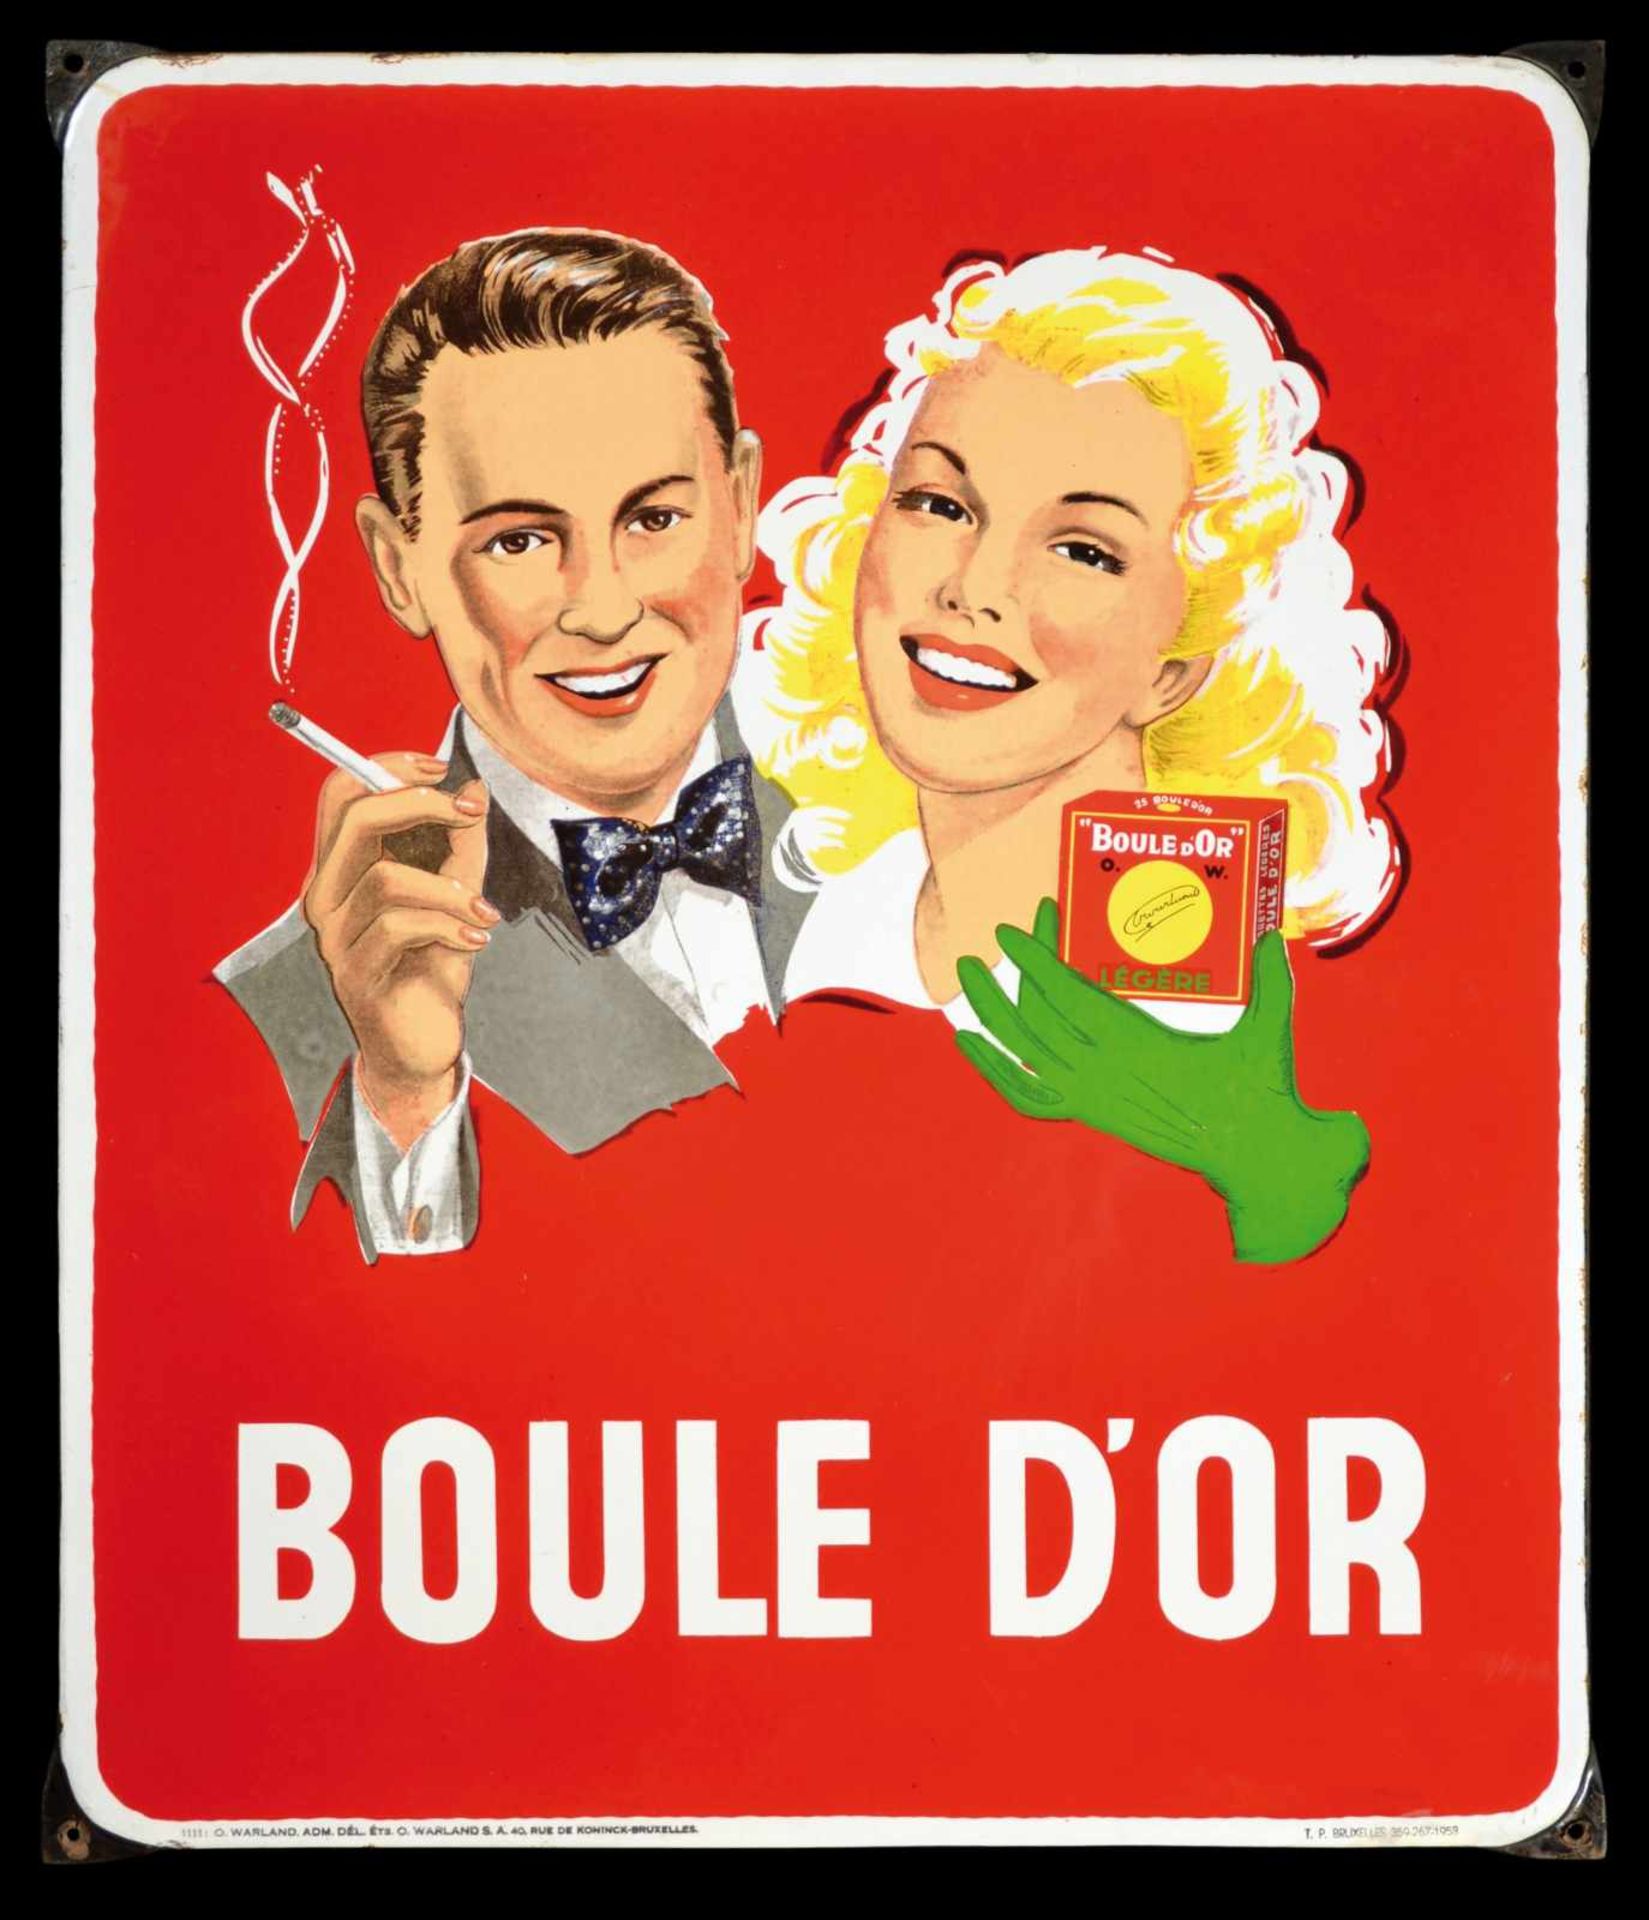 BOULE DOR (1) Emailschild, abgekantet, schabloniert und lithographiert, Belgien 1953, 56 x 66 cm,